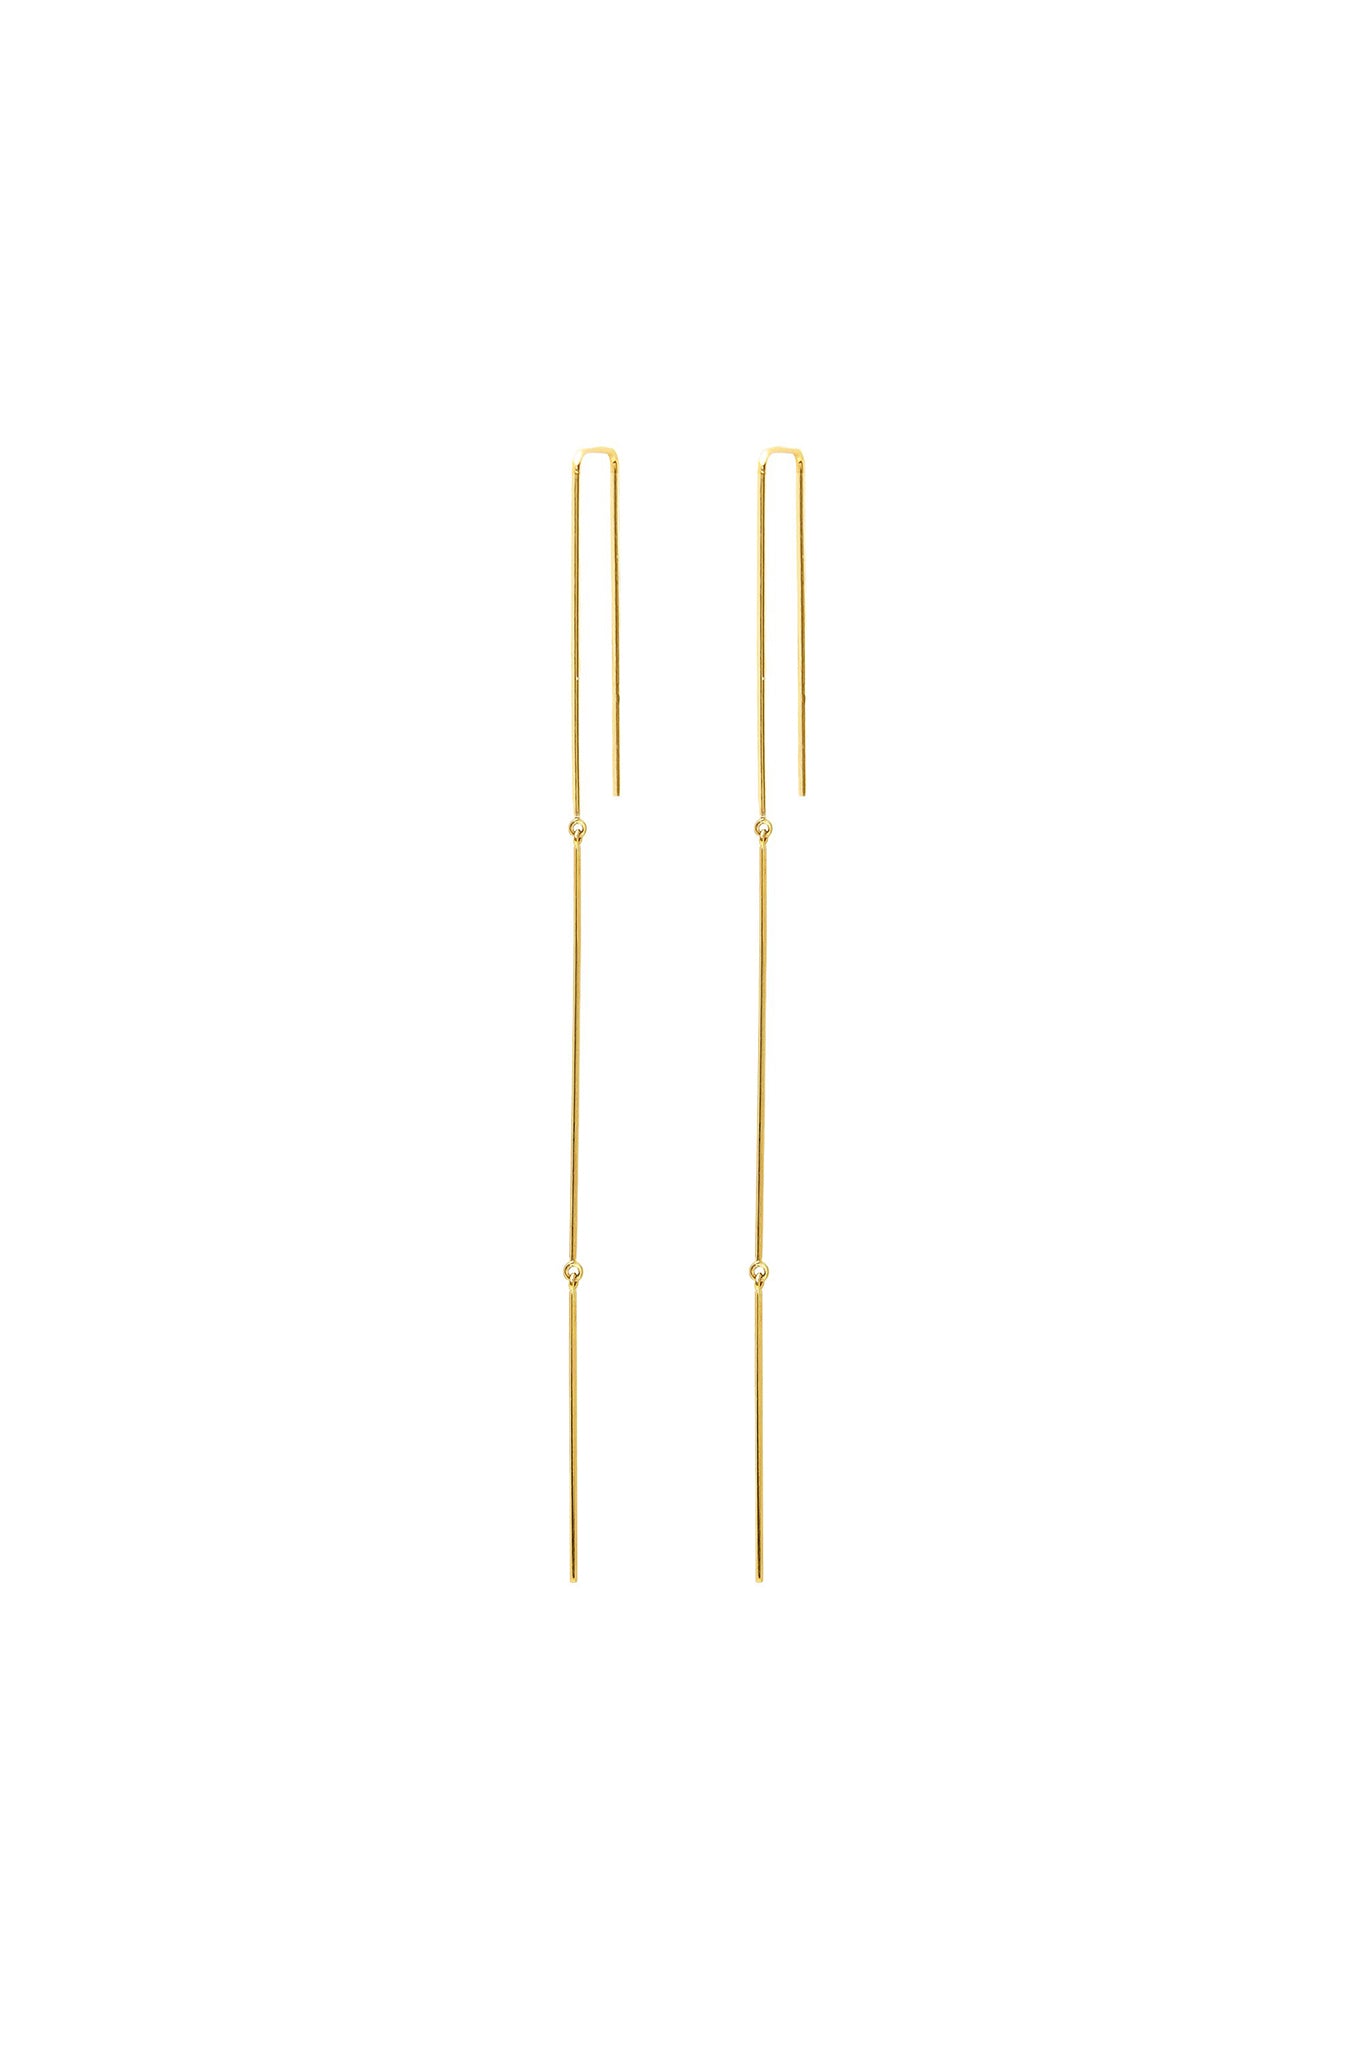 14k Gold Whisper Mobile Linear Earrings